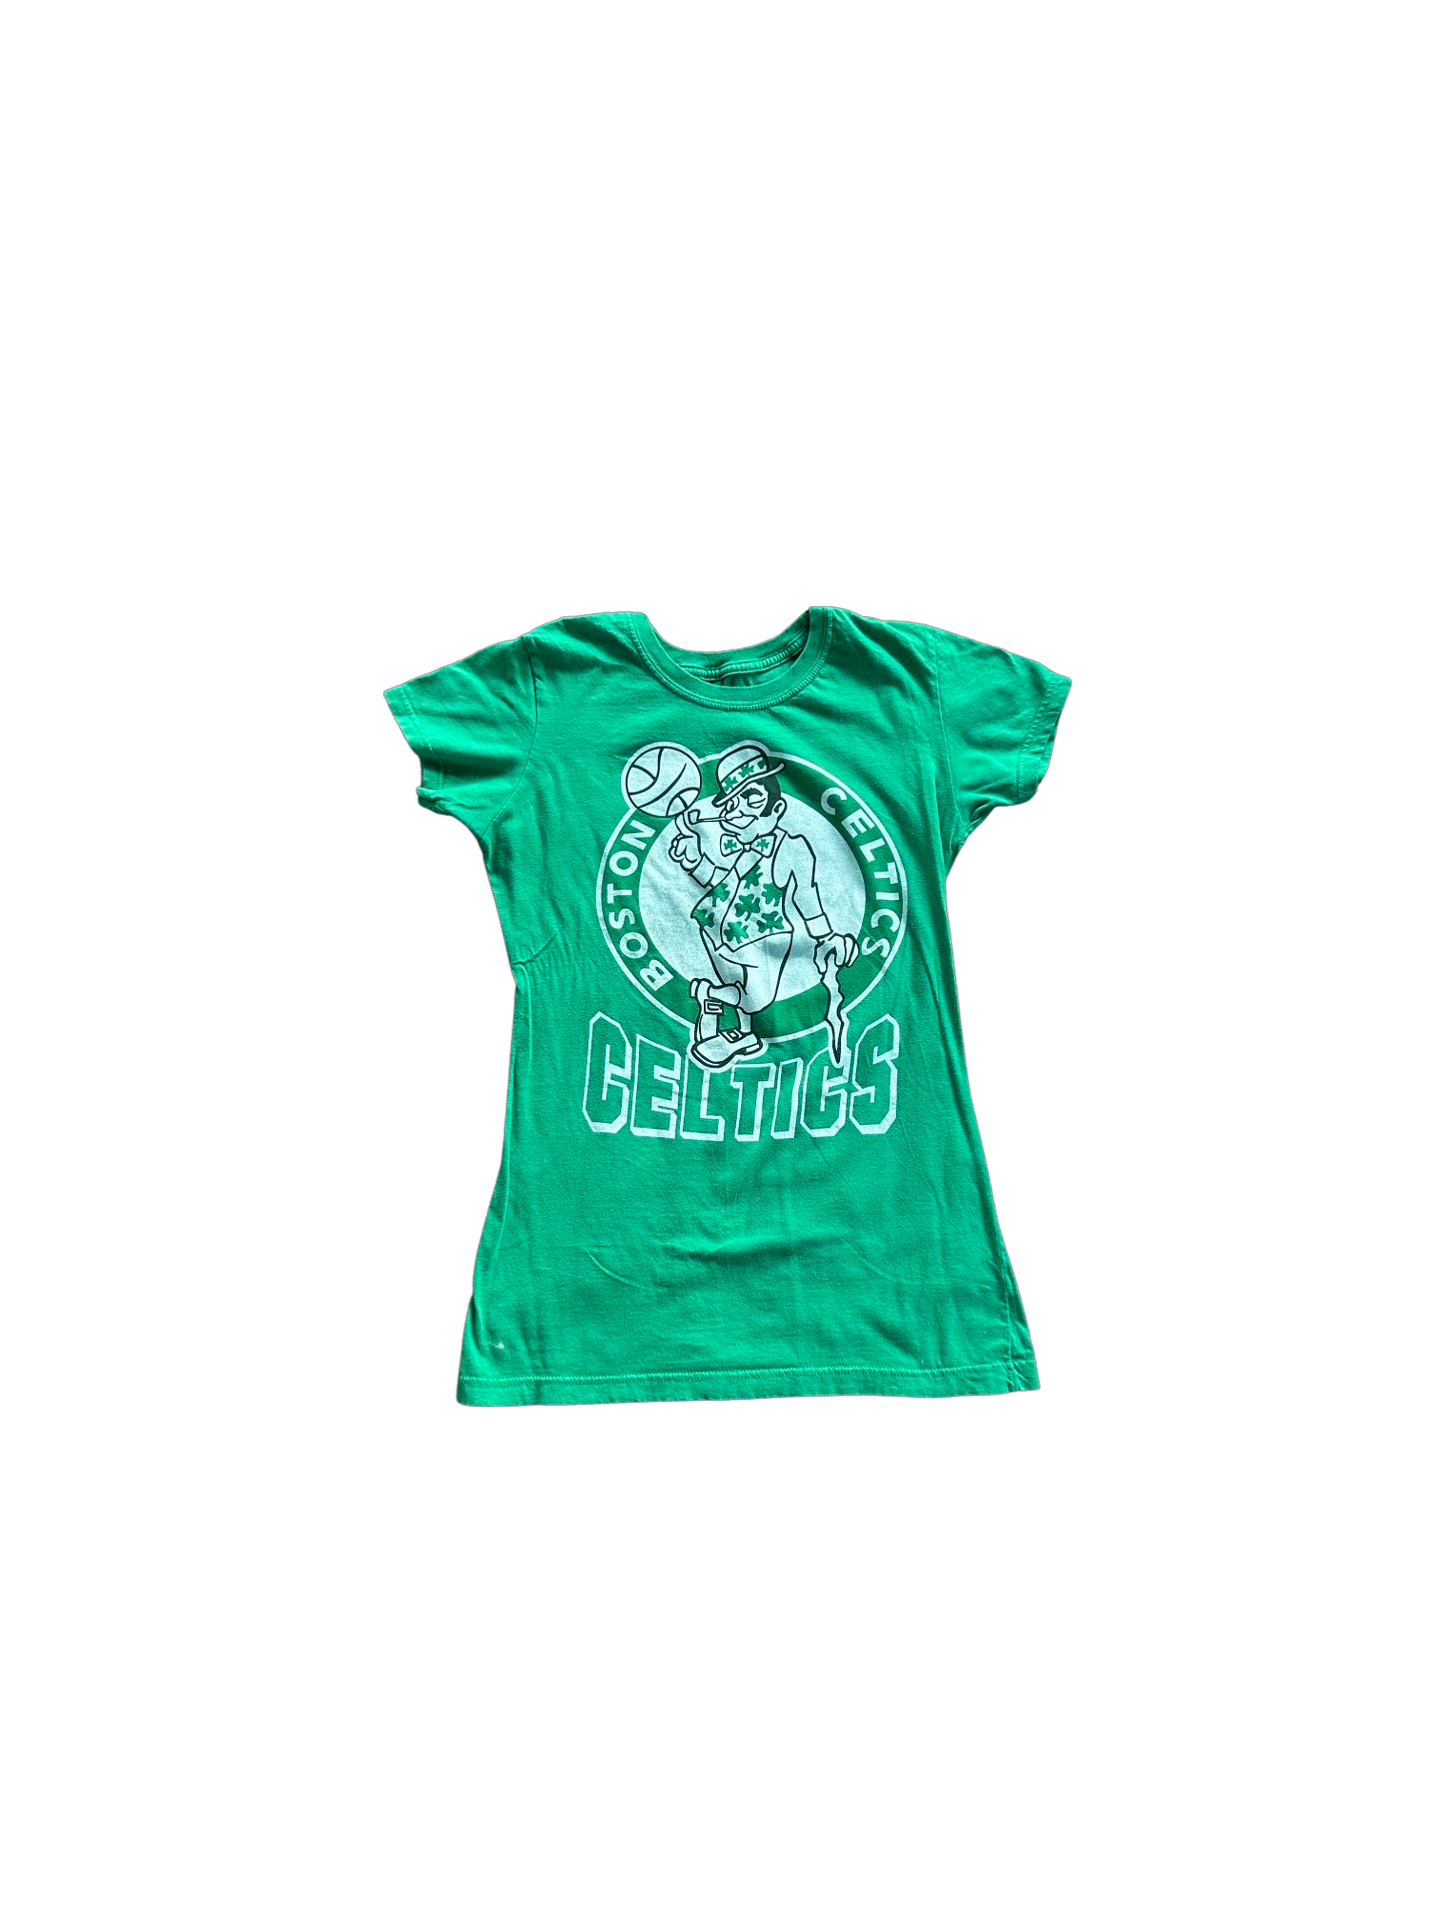 Vintage 80s Celtics Women's T-shirt